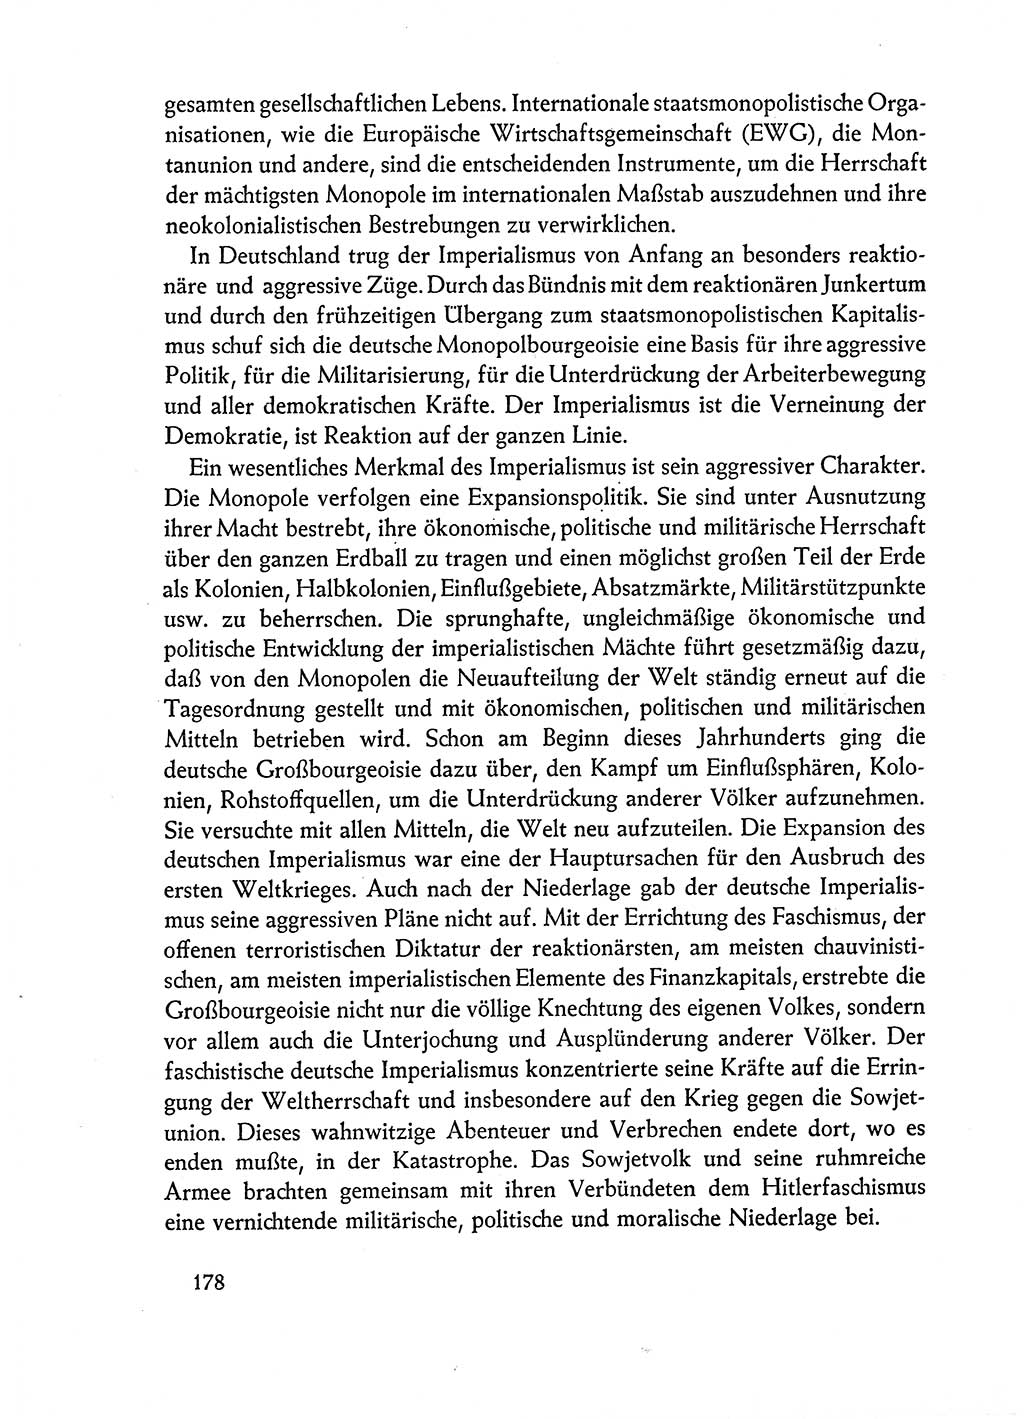 Dokumente der Sozialistischen Einheitspartei Deutschlands (SED) [Deutsche Demokratische Republik (DDR)] 1962-1963, Seite 178 (Dok. SED DDR 1962-1963, S. 178)